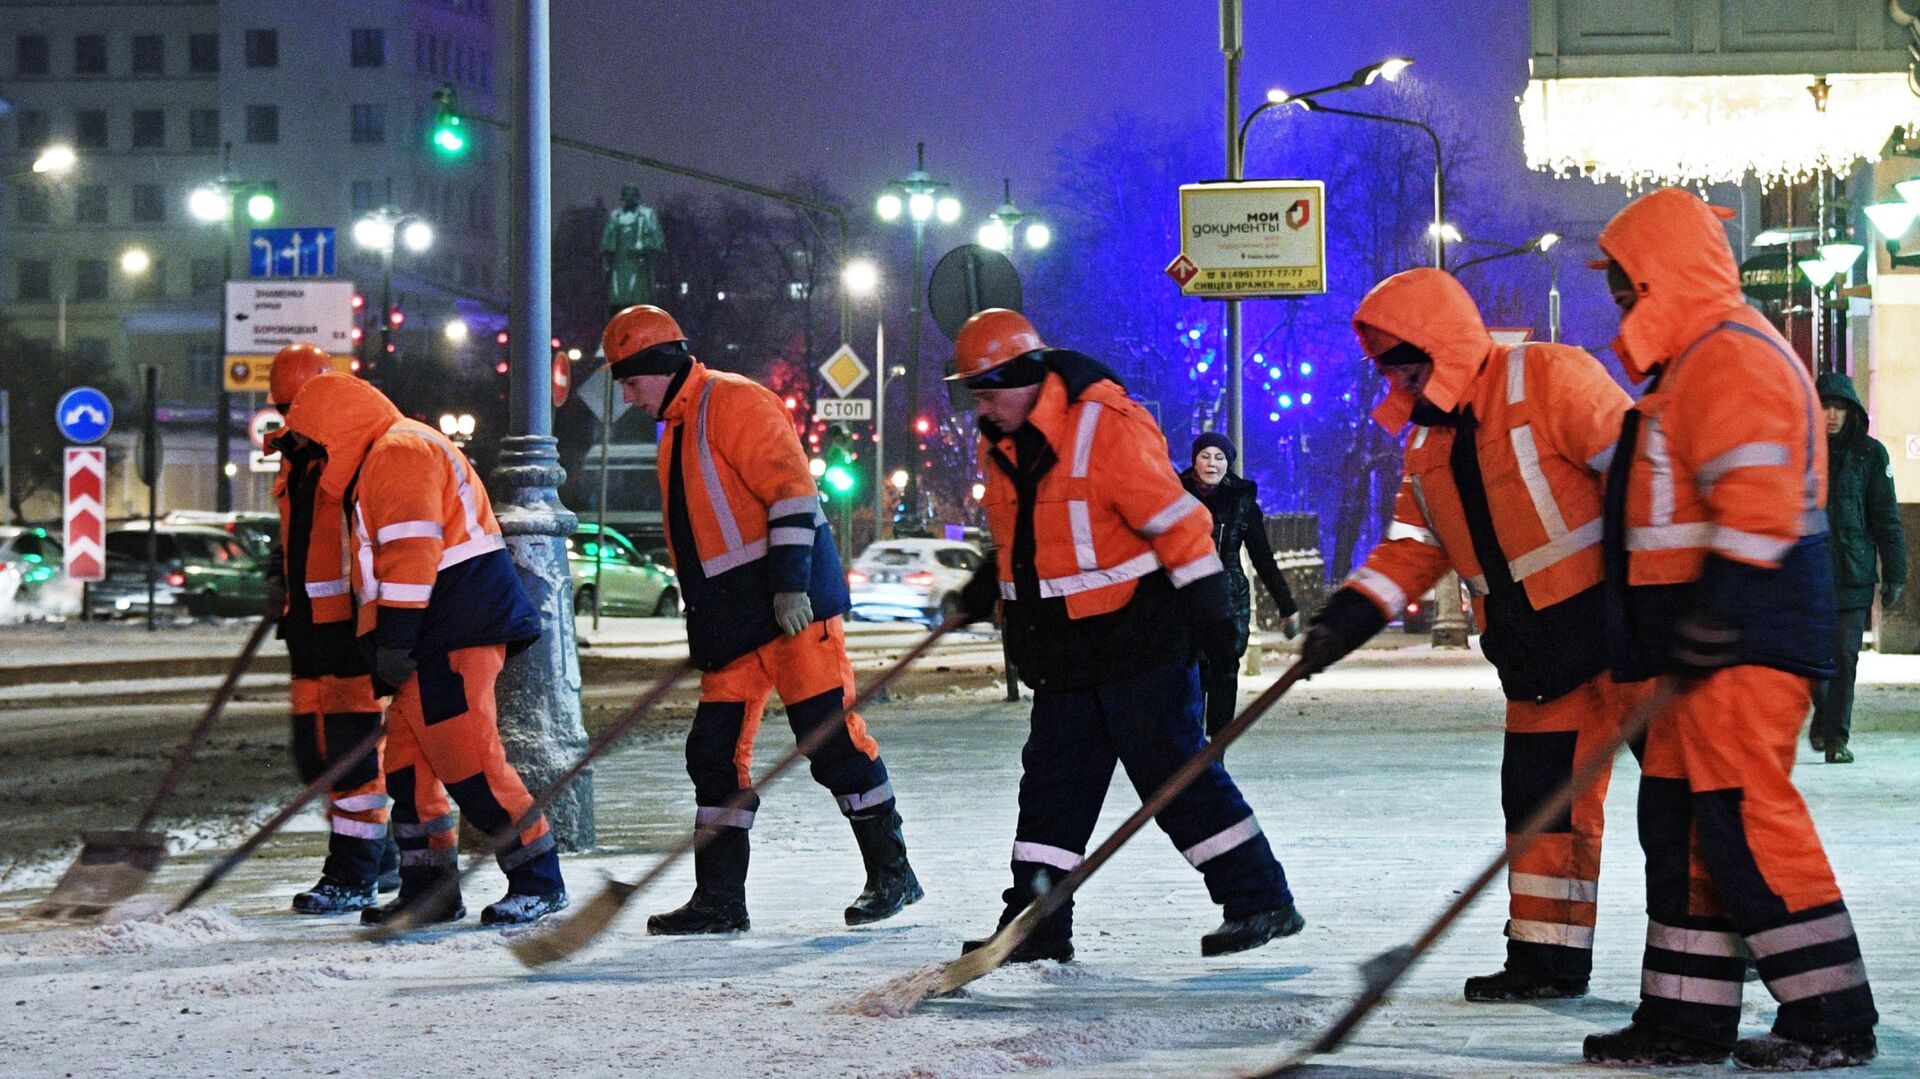 Сотрудники коммунальных служб убирают снег на улице Москвы - Sputnik Таджикистан, 1920, 25.11.2021